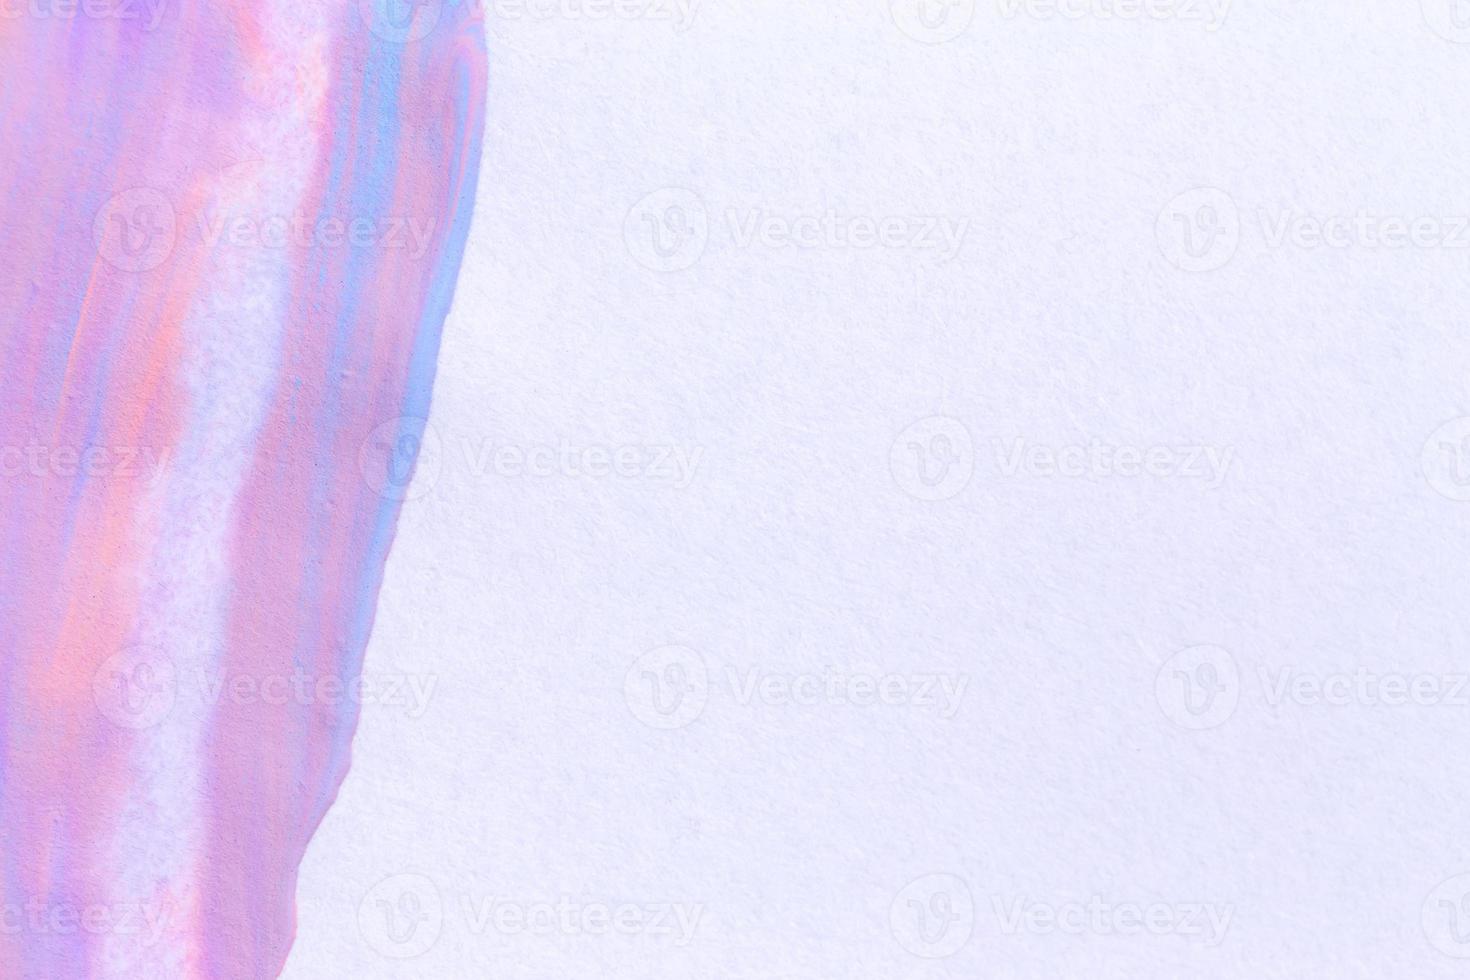 verf penseelstreek textuur achtergrond van veelkleurige aquarel foto